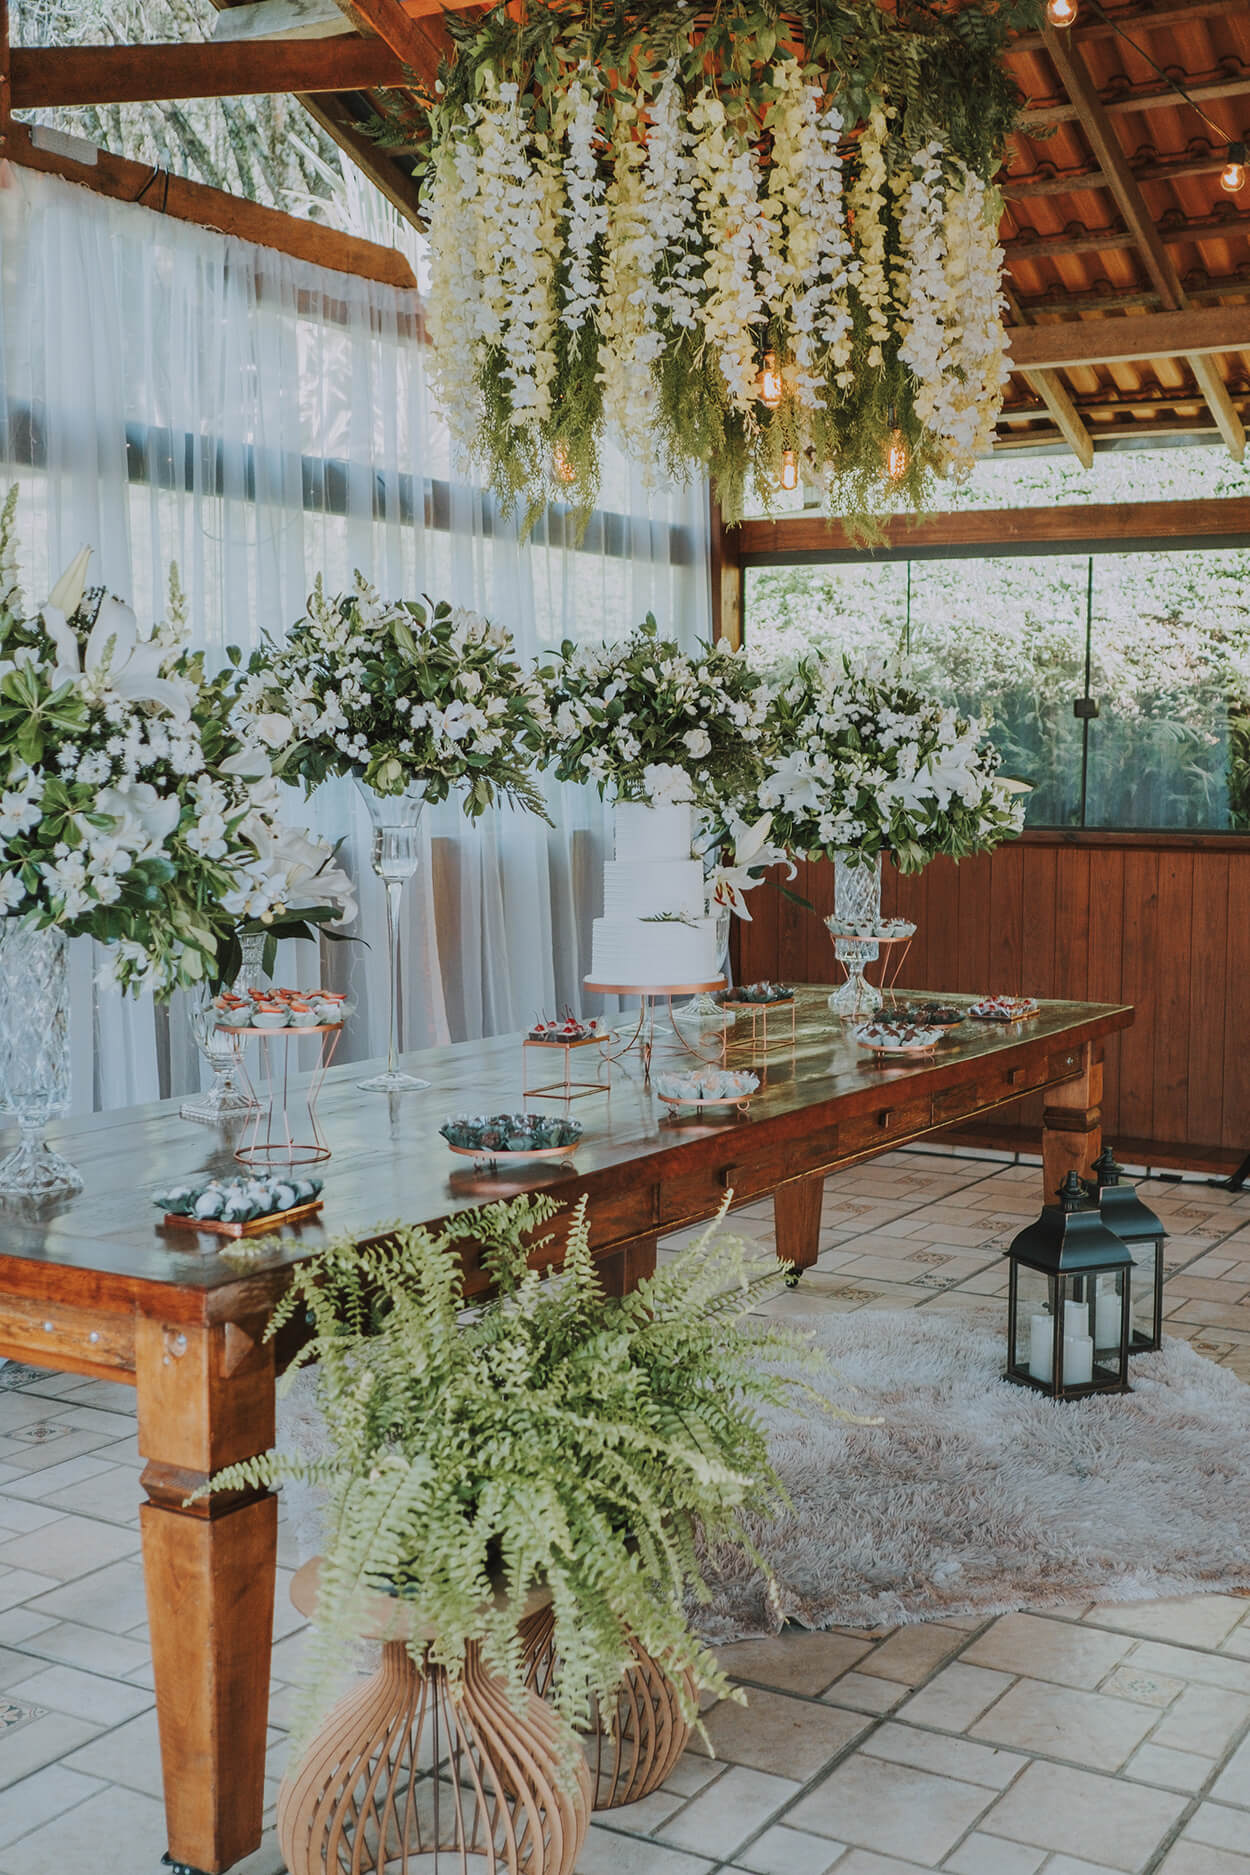 Salão de madeira com mesa com bolo de casamento e earranjos florais brancos